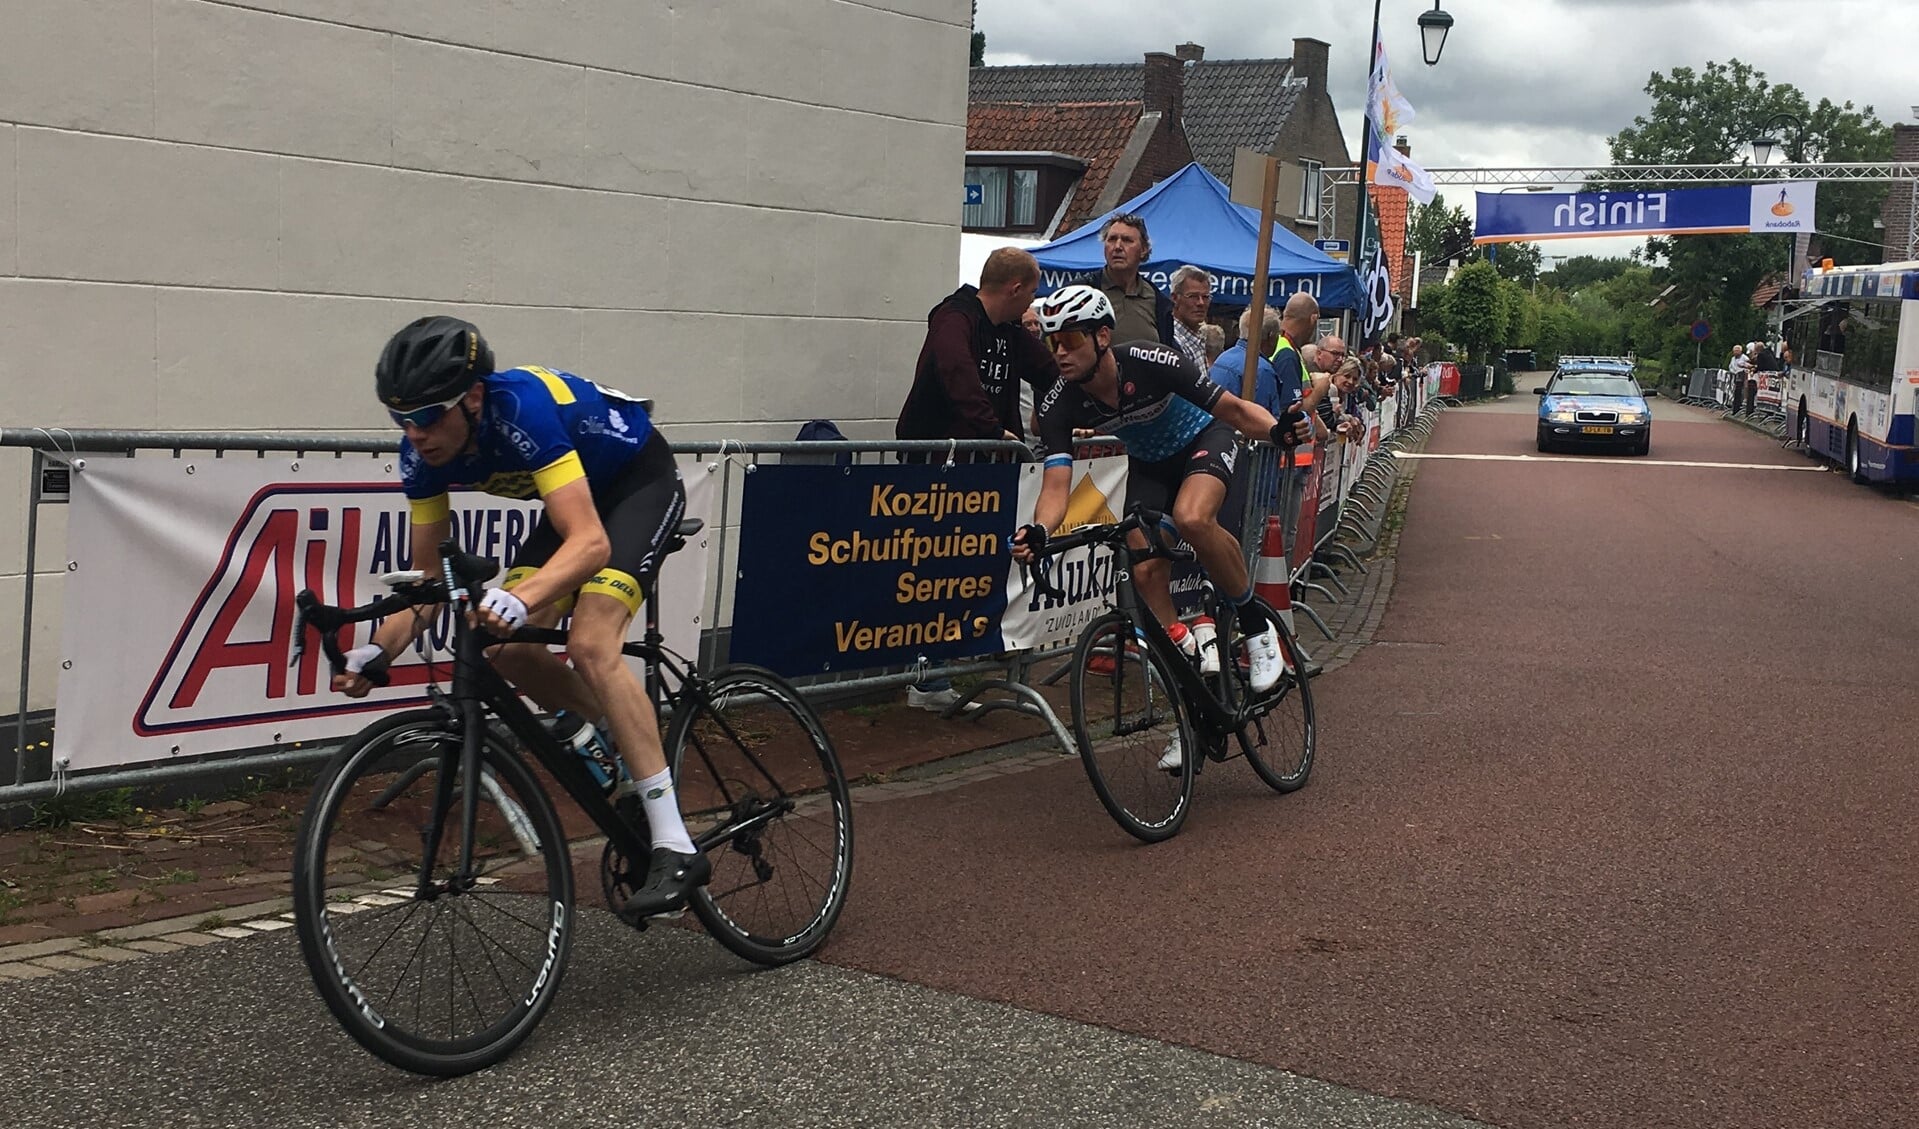 Evenals in de Ronde van Abbenbroek hadden Marco Geleijnse en Nils Wolffenbuttel elkaar in Zuidland snel gevonden voor de achtervolging.